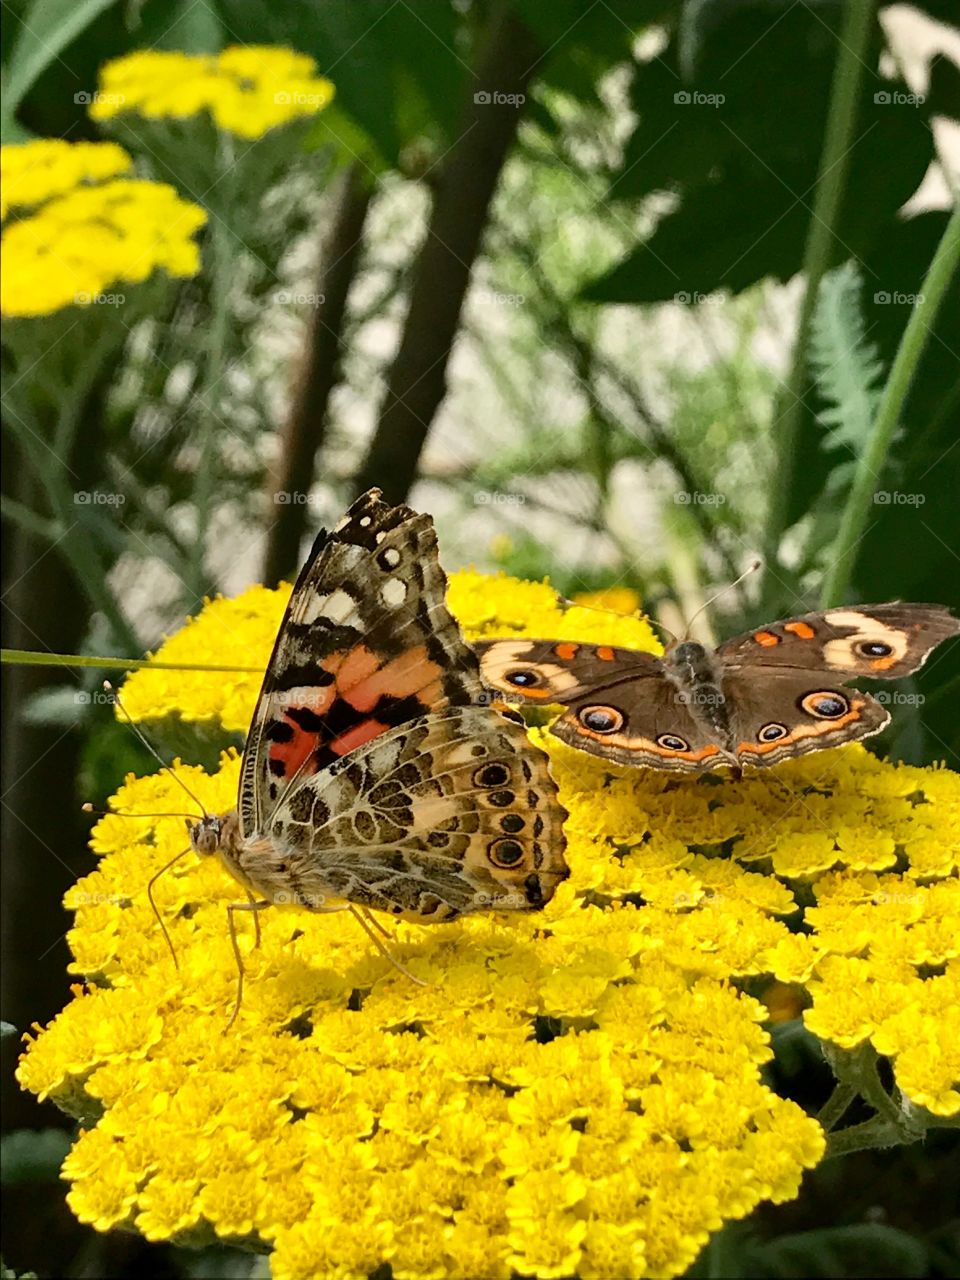 Wings of two butterflies 